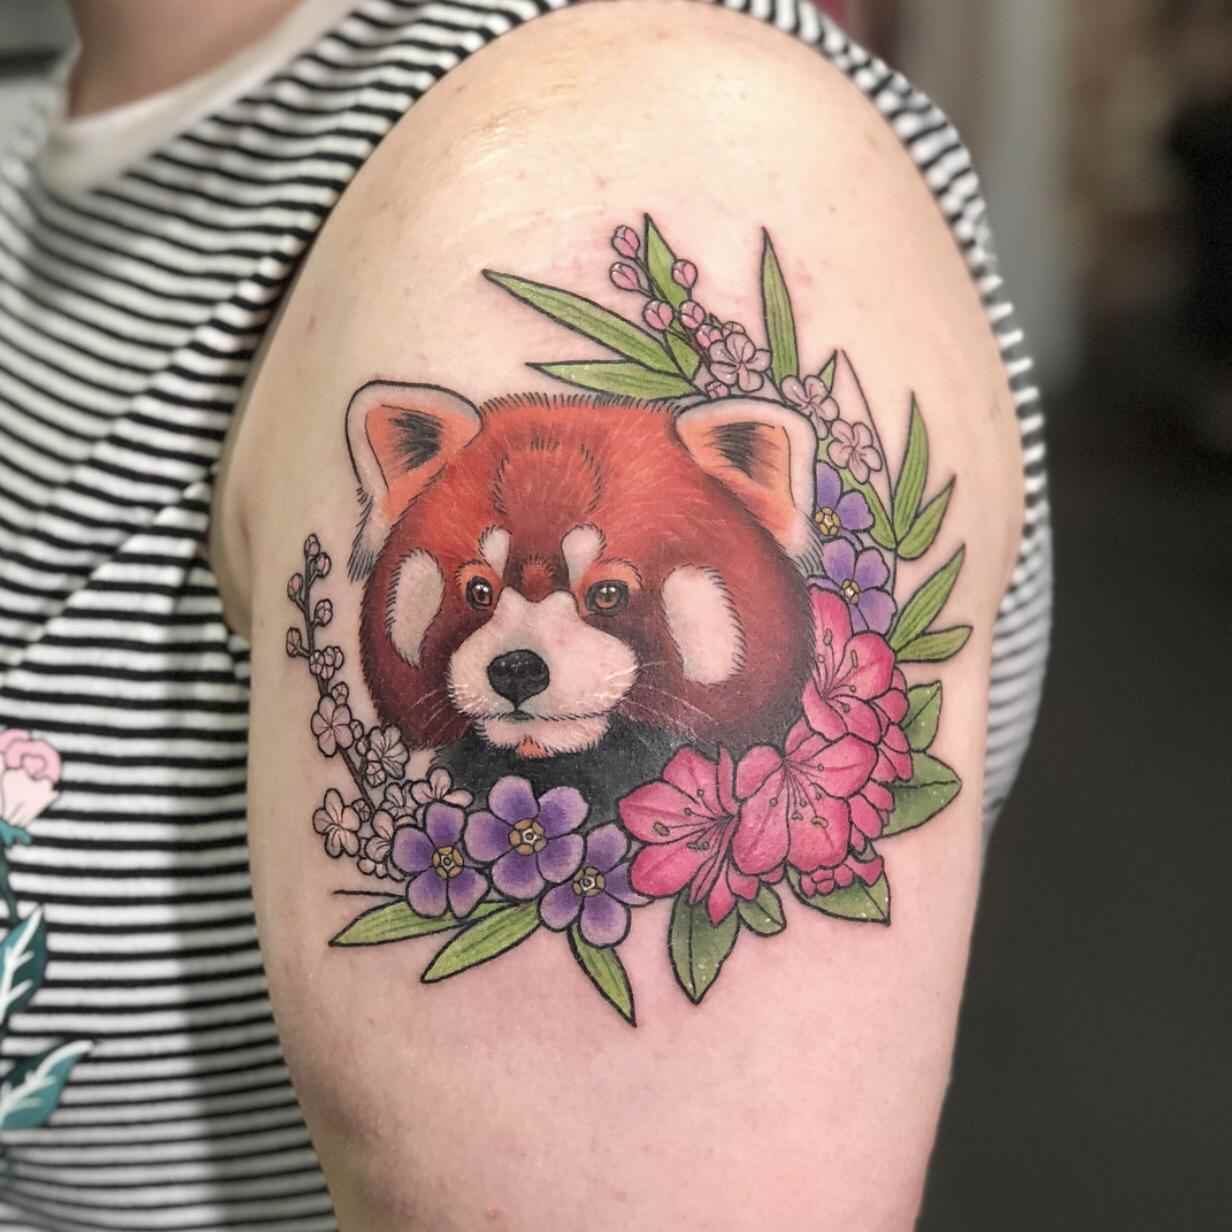 Röd panda i kombination med exotiska rosa och lila blommor